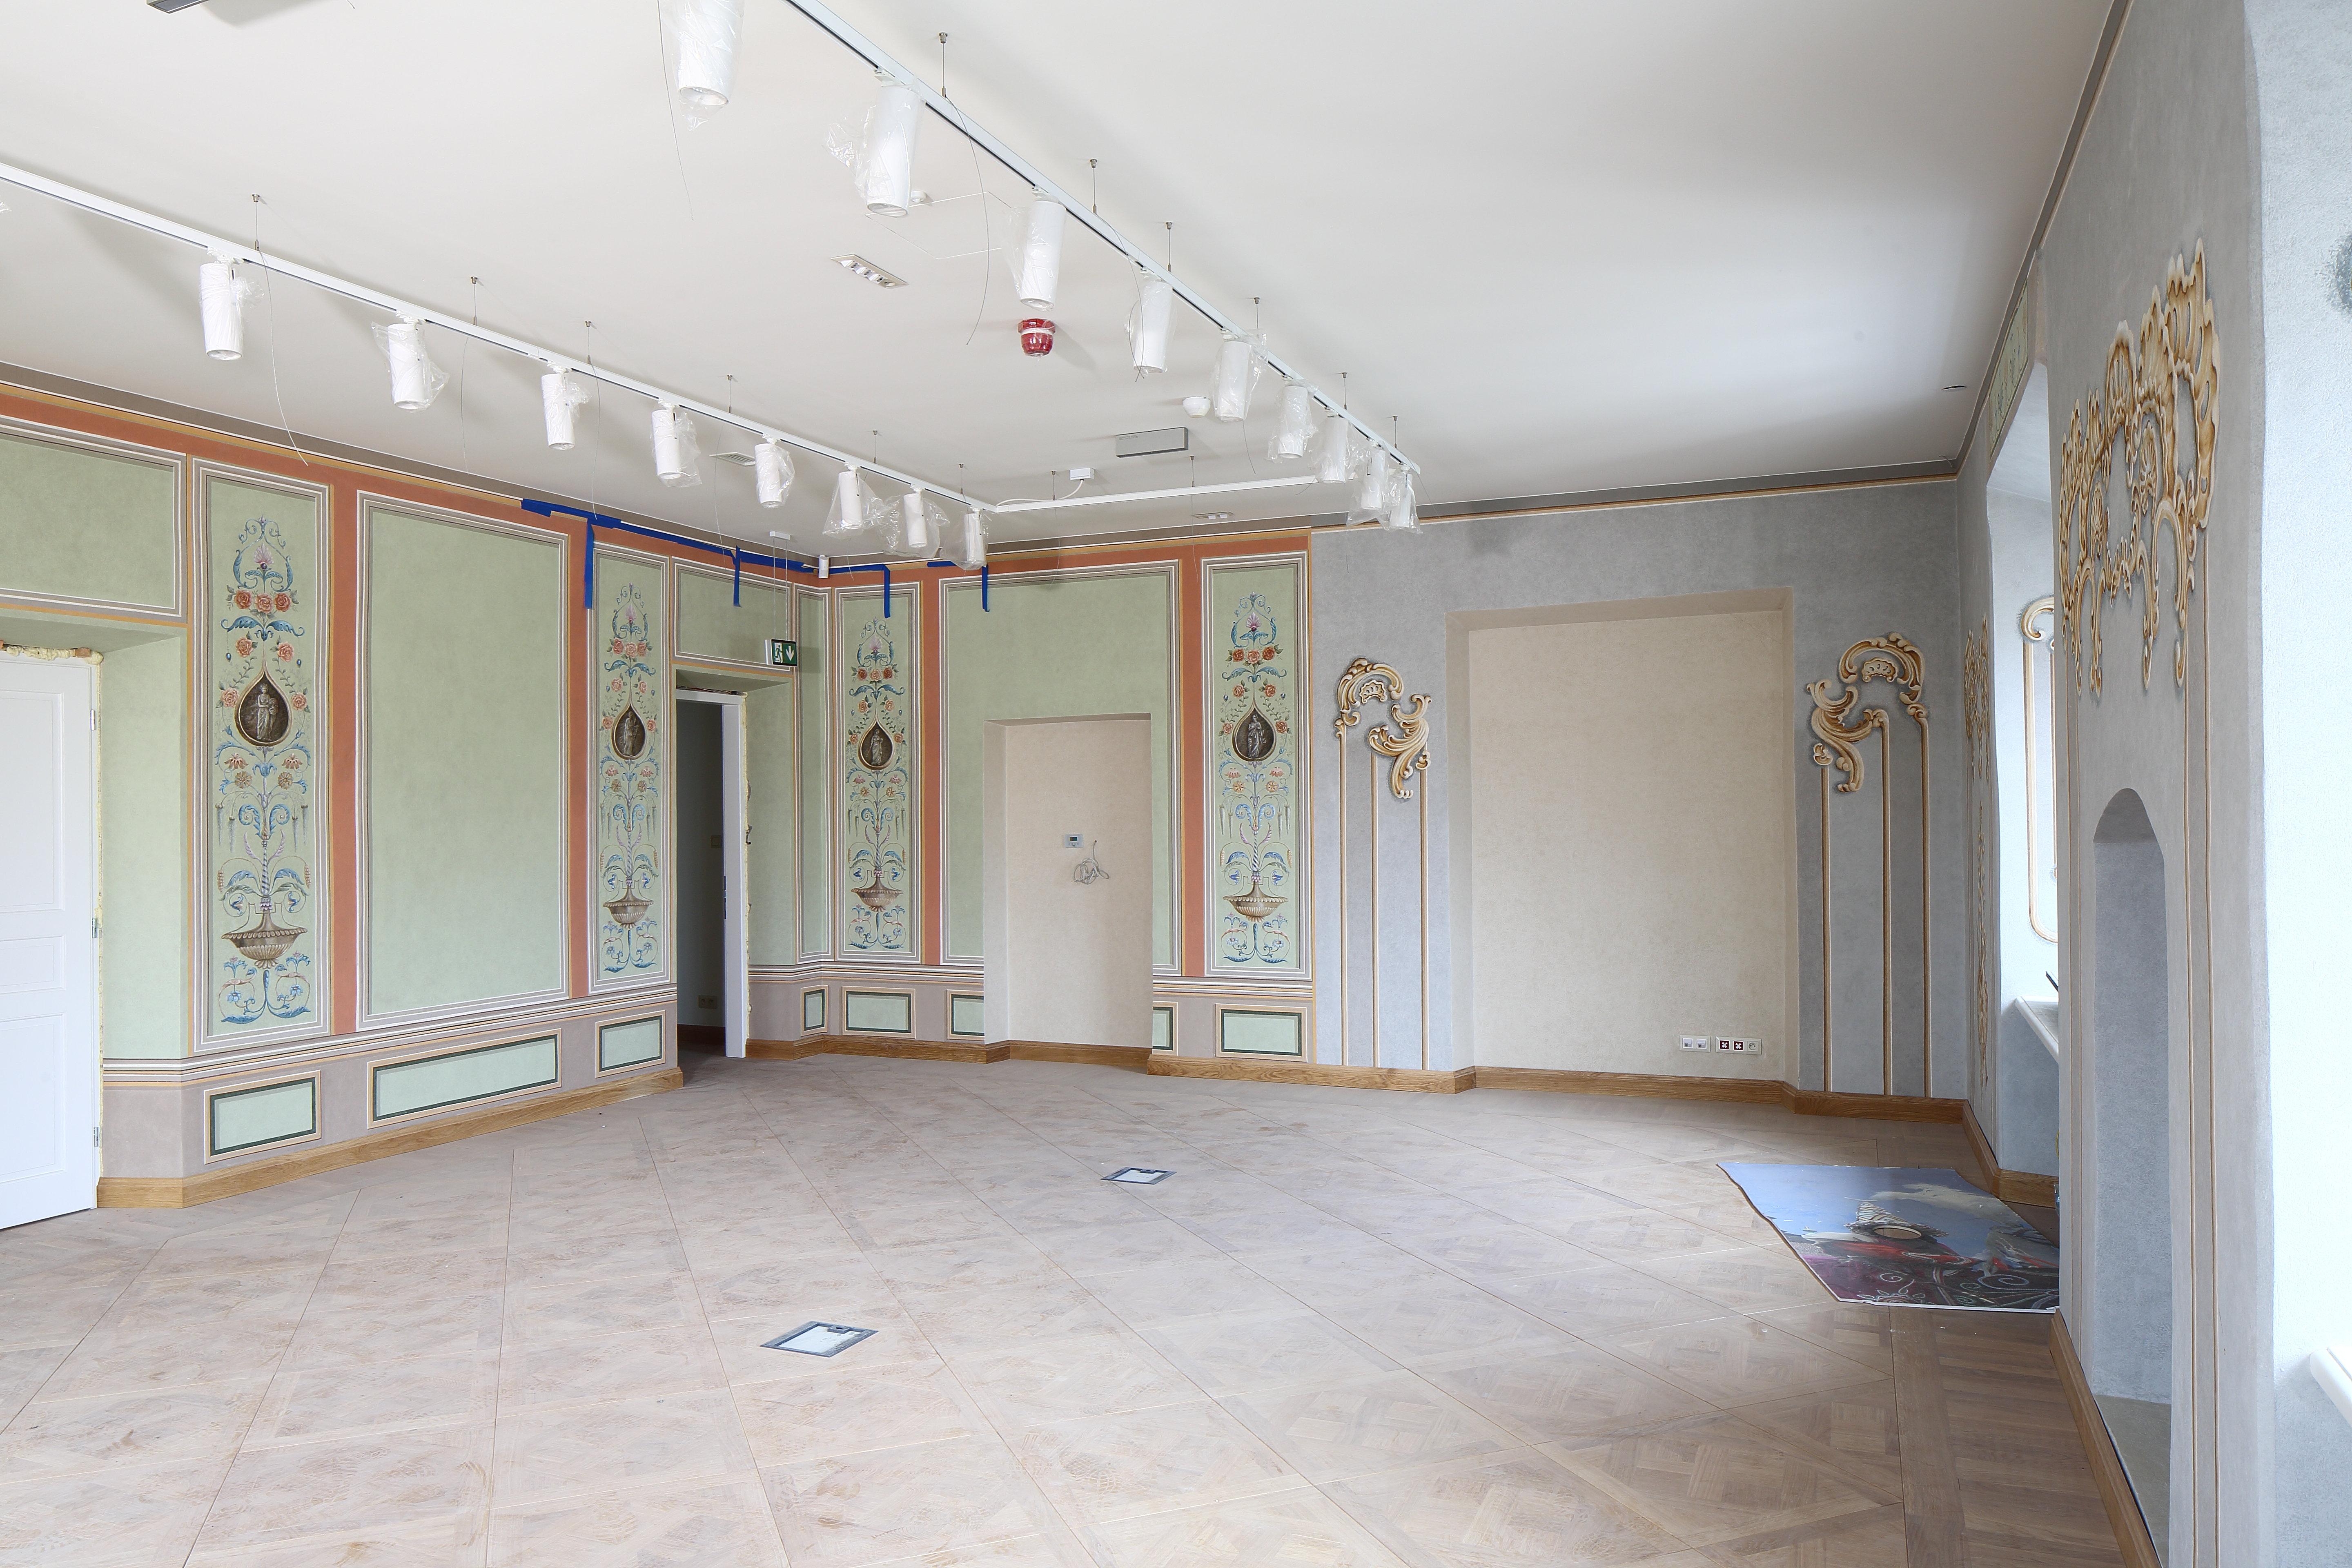 Wnętrze Pałacu Krzysztofory, puste pomieszczenie, ściany zdobione malowidłami. Na podłodze duże płytki